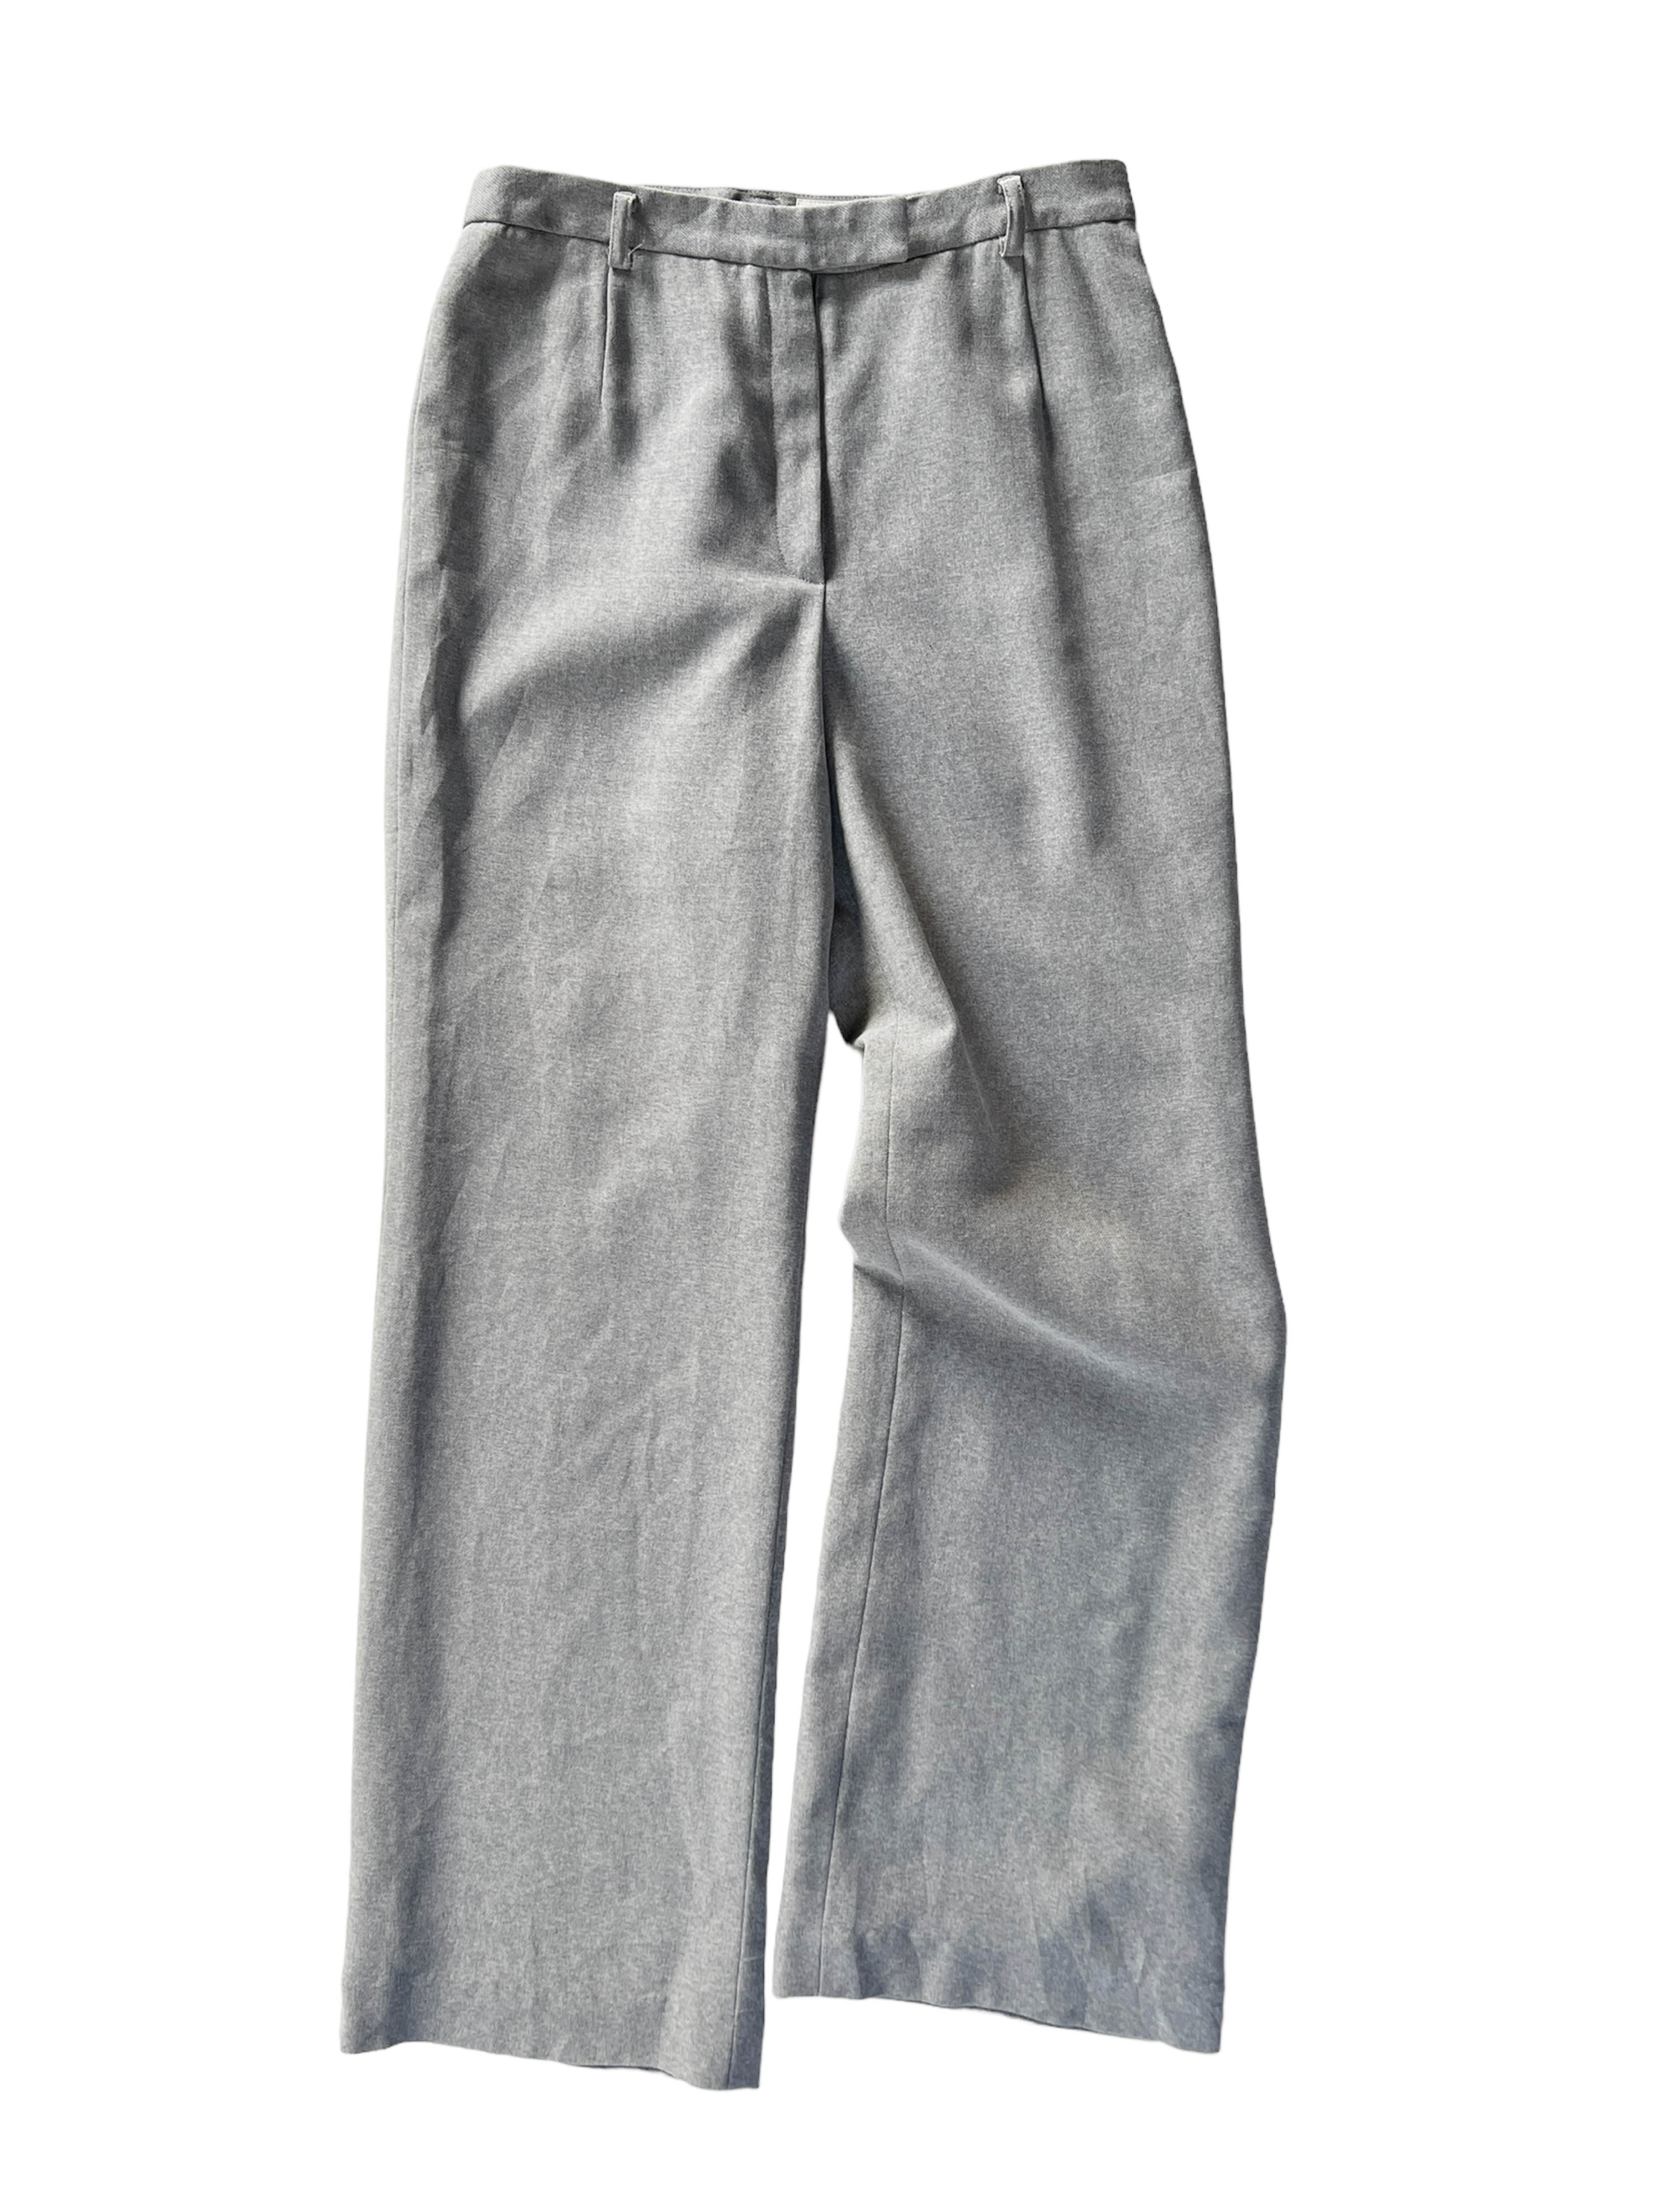 23 grey pants